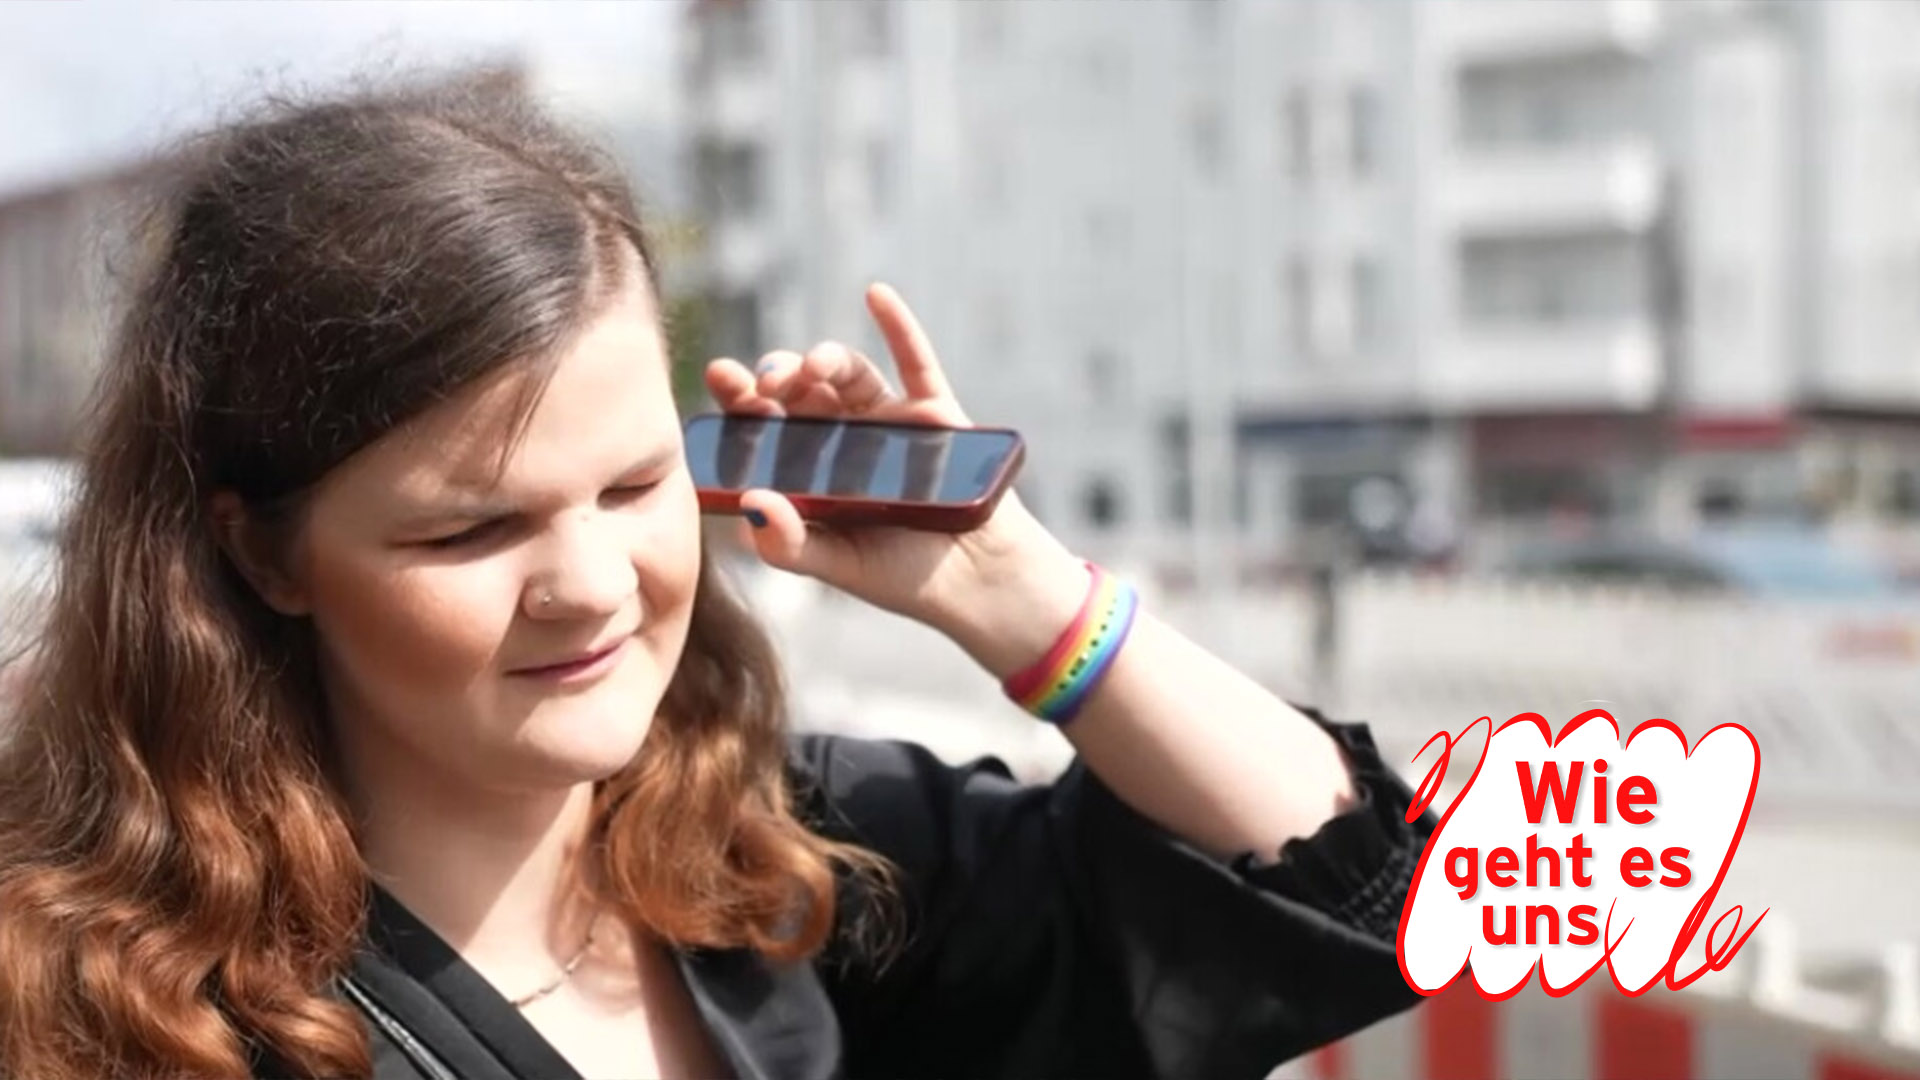 Marie Lampe ist blind und nutzt die KI auf ihrem Smartphone. (Quelle: rbb)